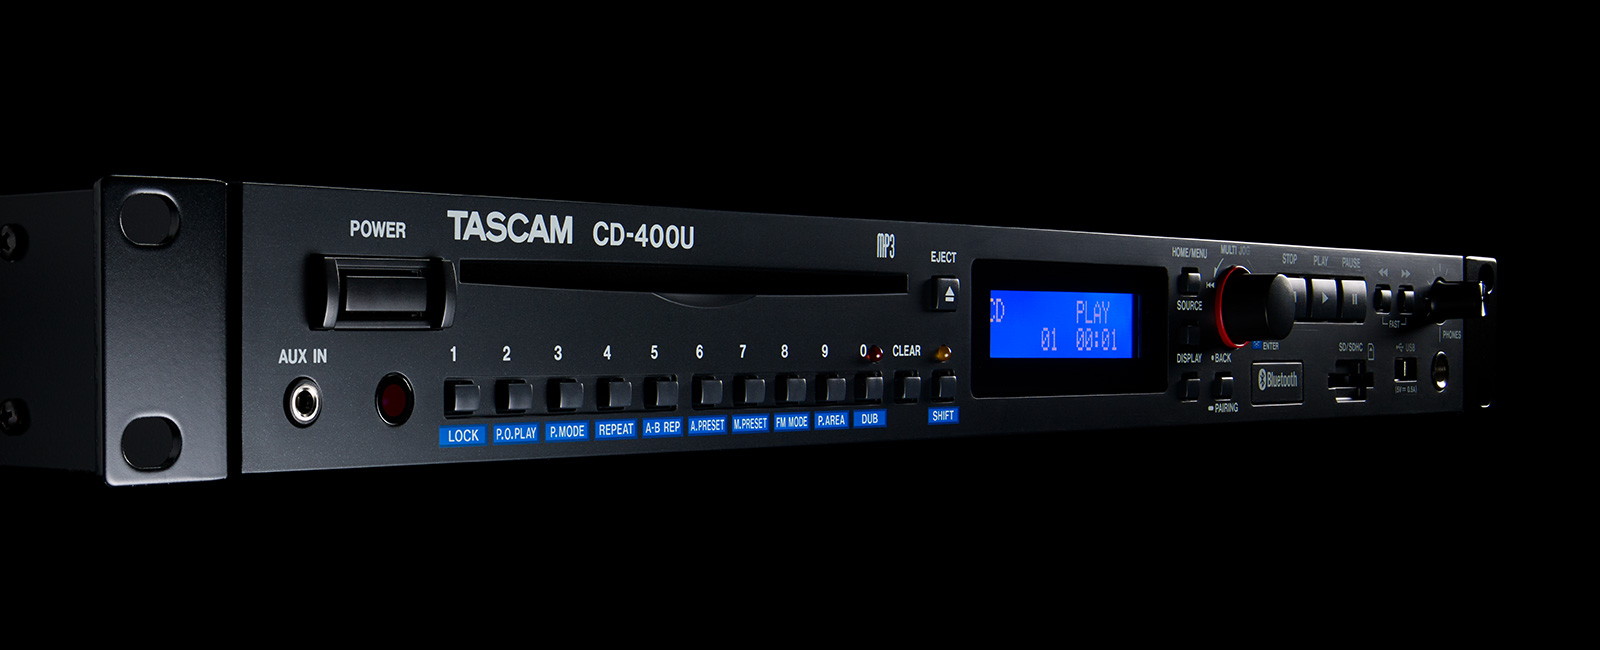 CD-400U | 特長 | TASCAM (日本)